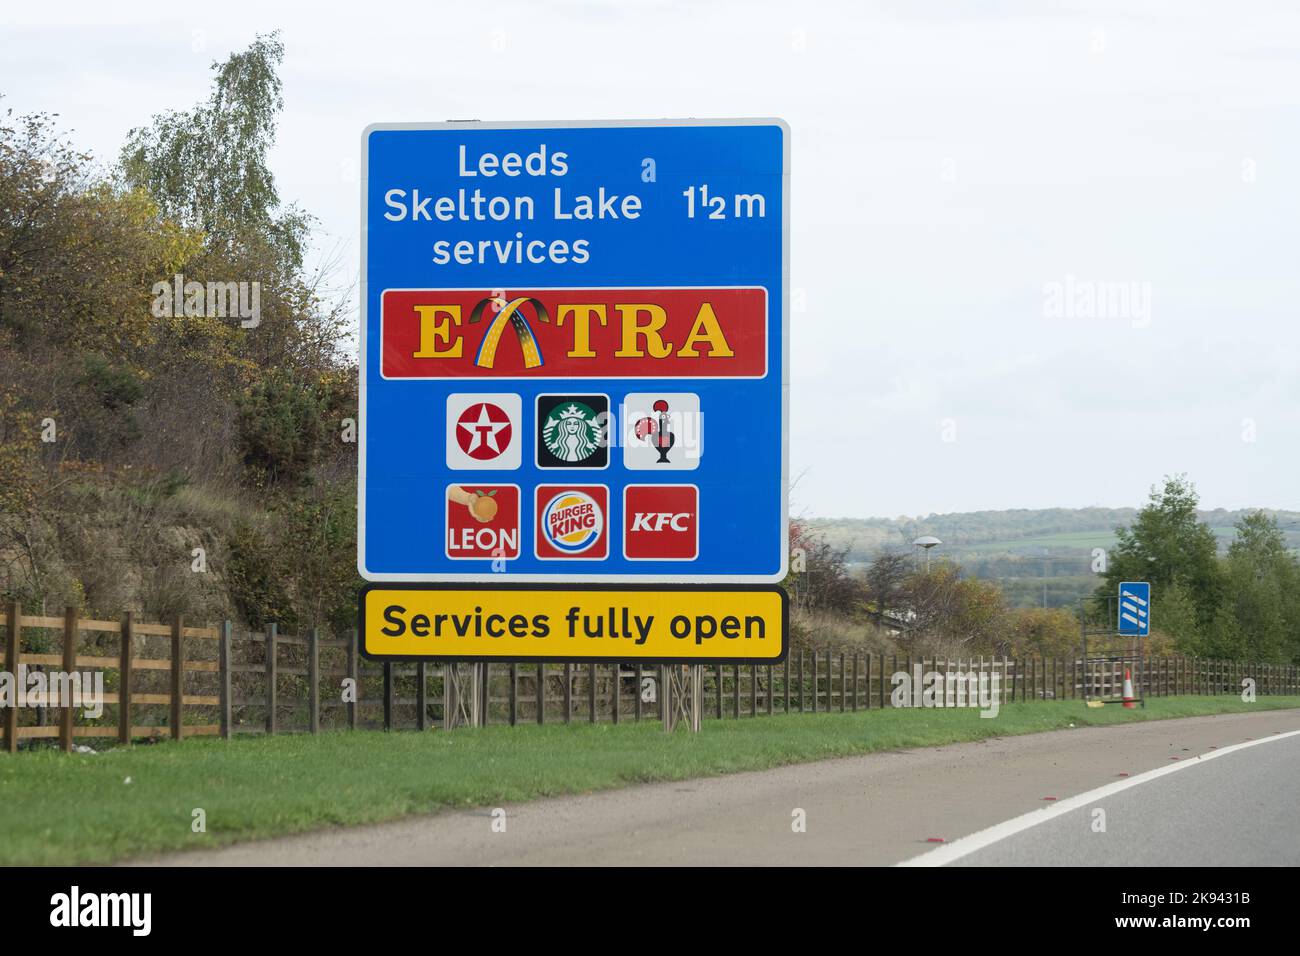 Extra motorway services Leeds Skelton Lake - M1 motorway junction 45 - England, UK Stock Photo